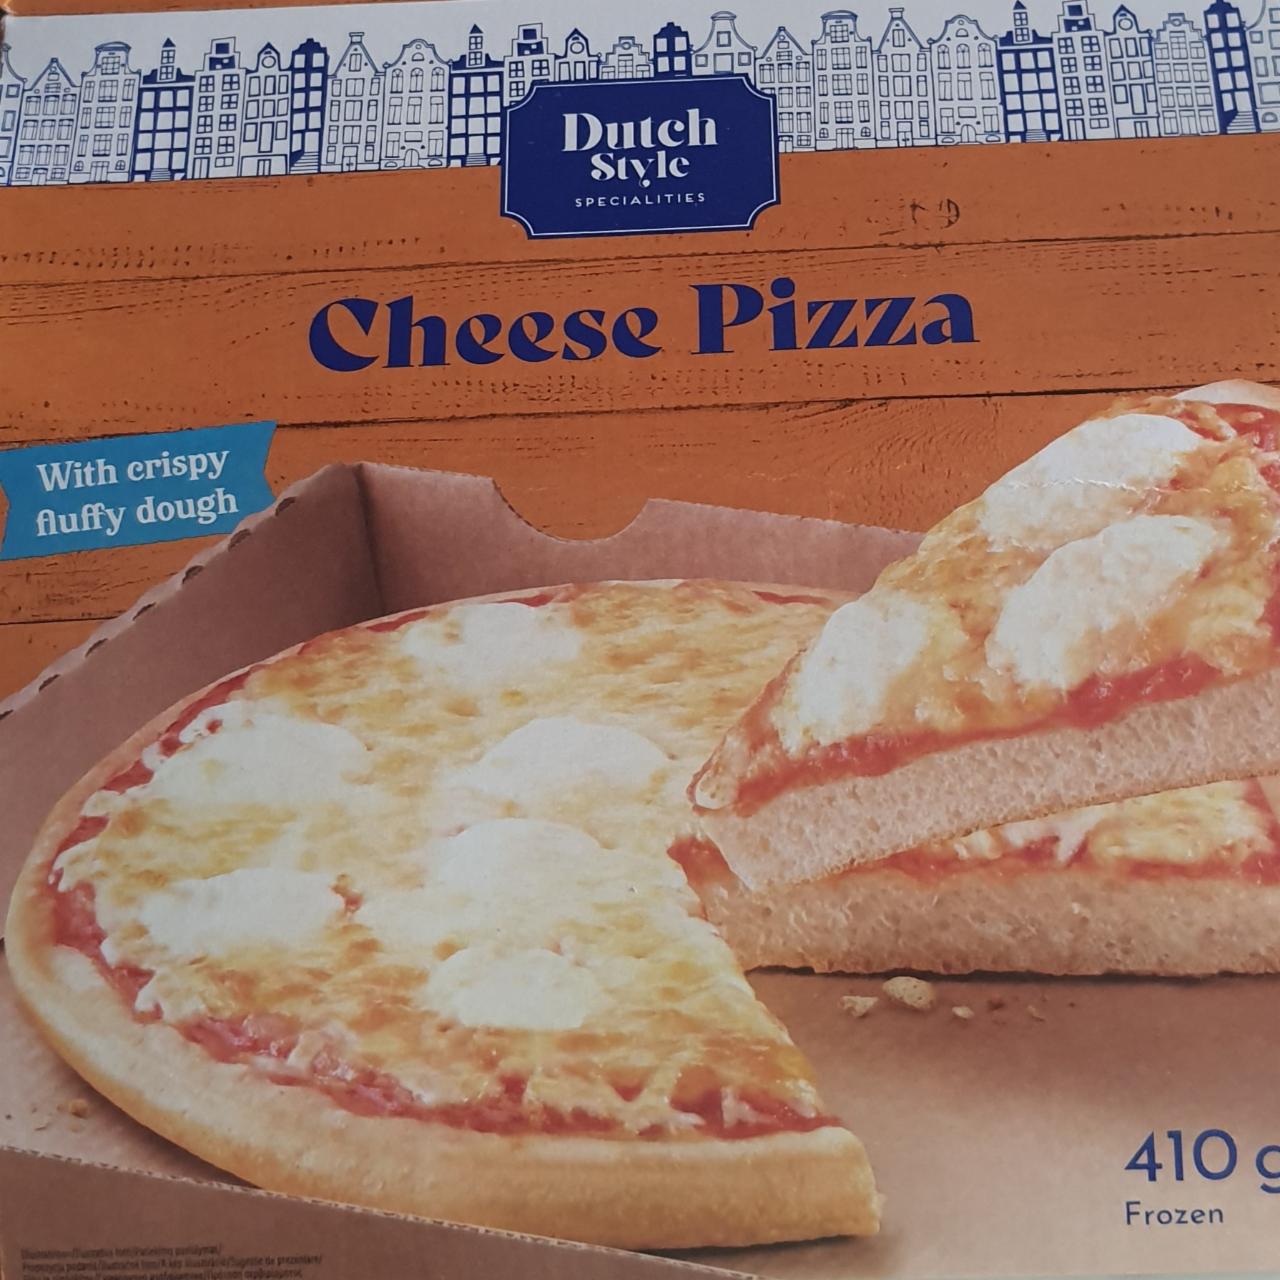 Zdjęcia - Cheese pizza Dutch style